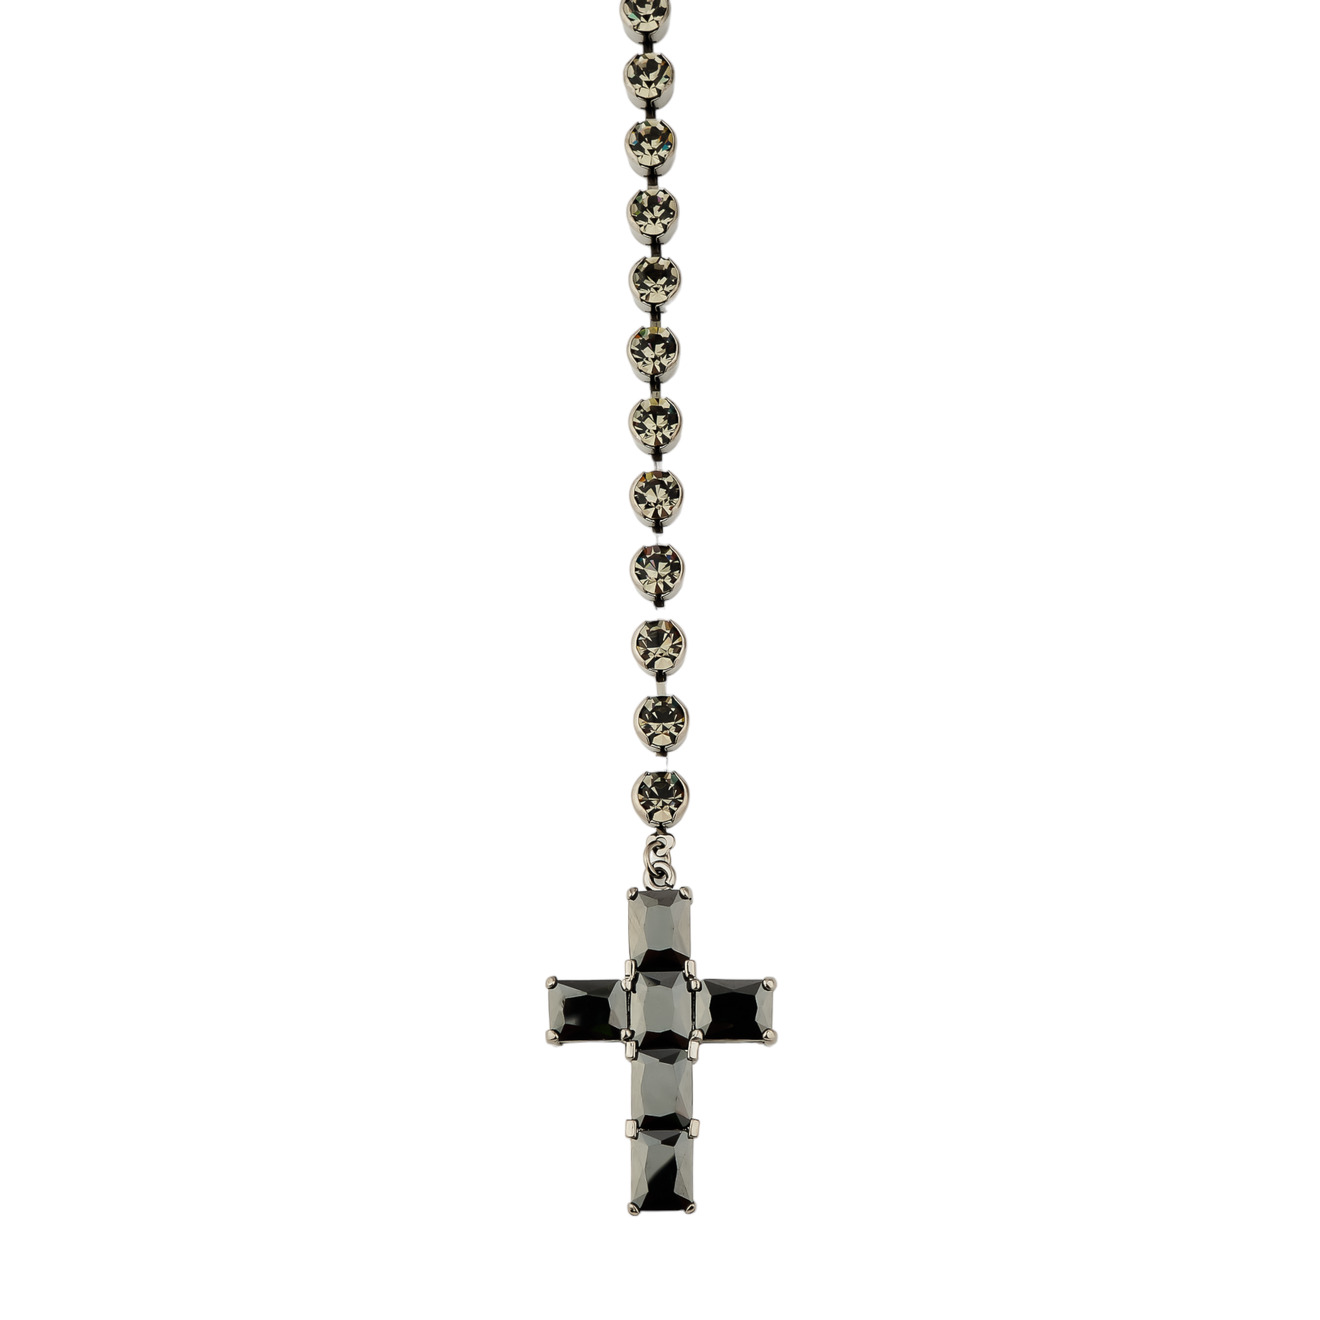 Herald Percy Сотуар с кристаллами и подвеской крестом черного цвета